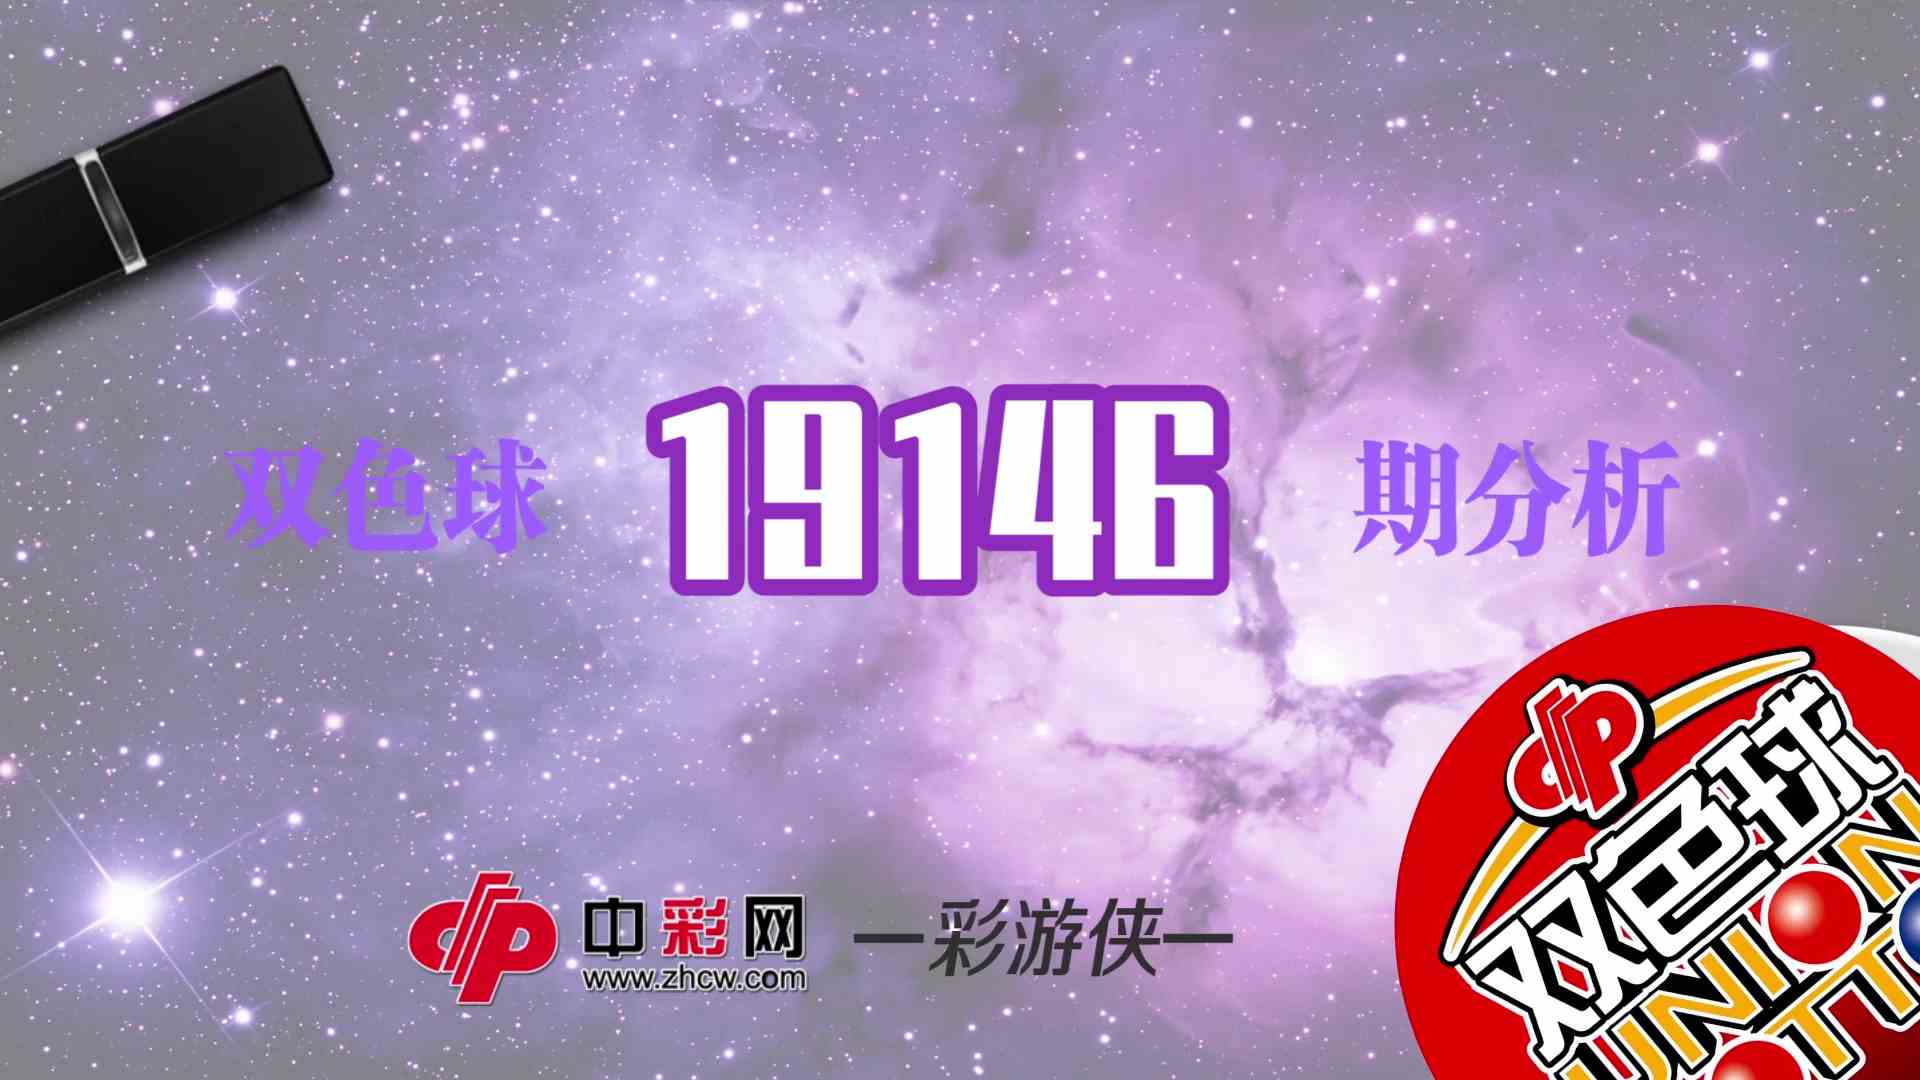 【中彩视频】彩游侠双色球第19146期